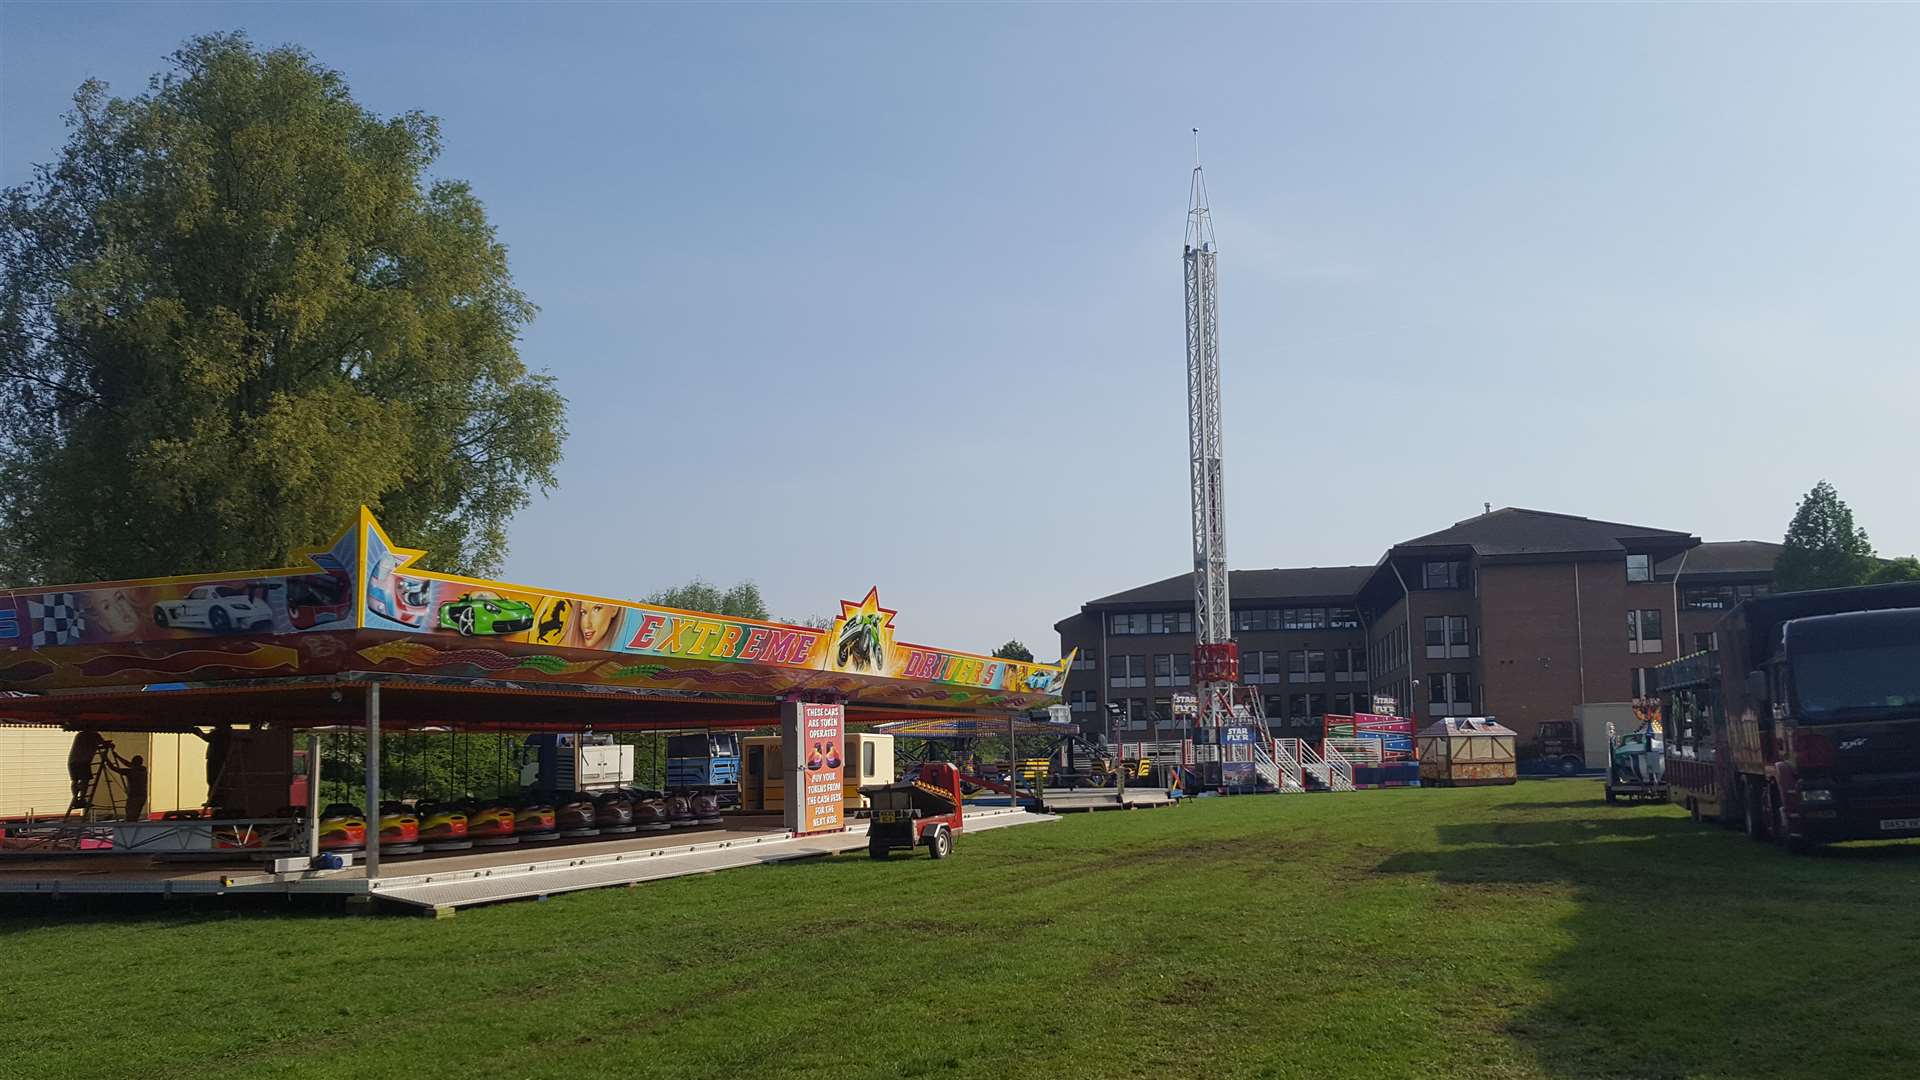 The fun fair has arrived in Ashford